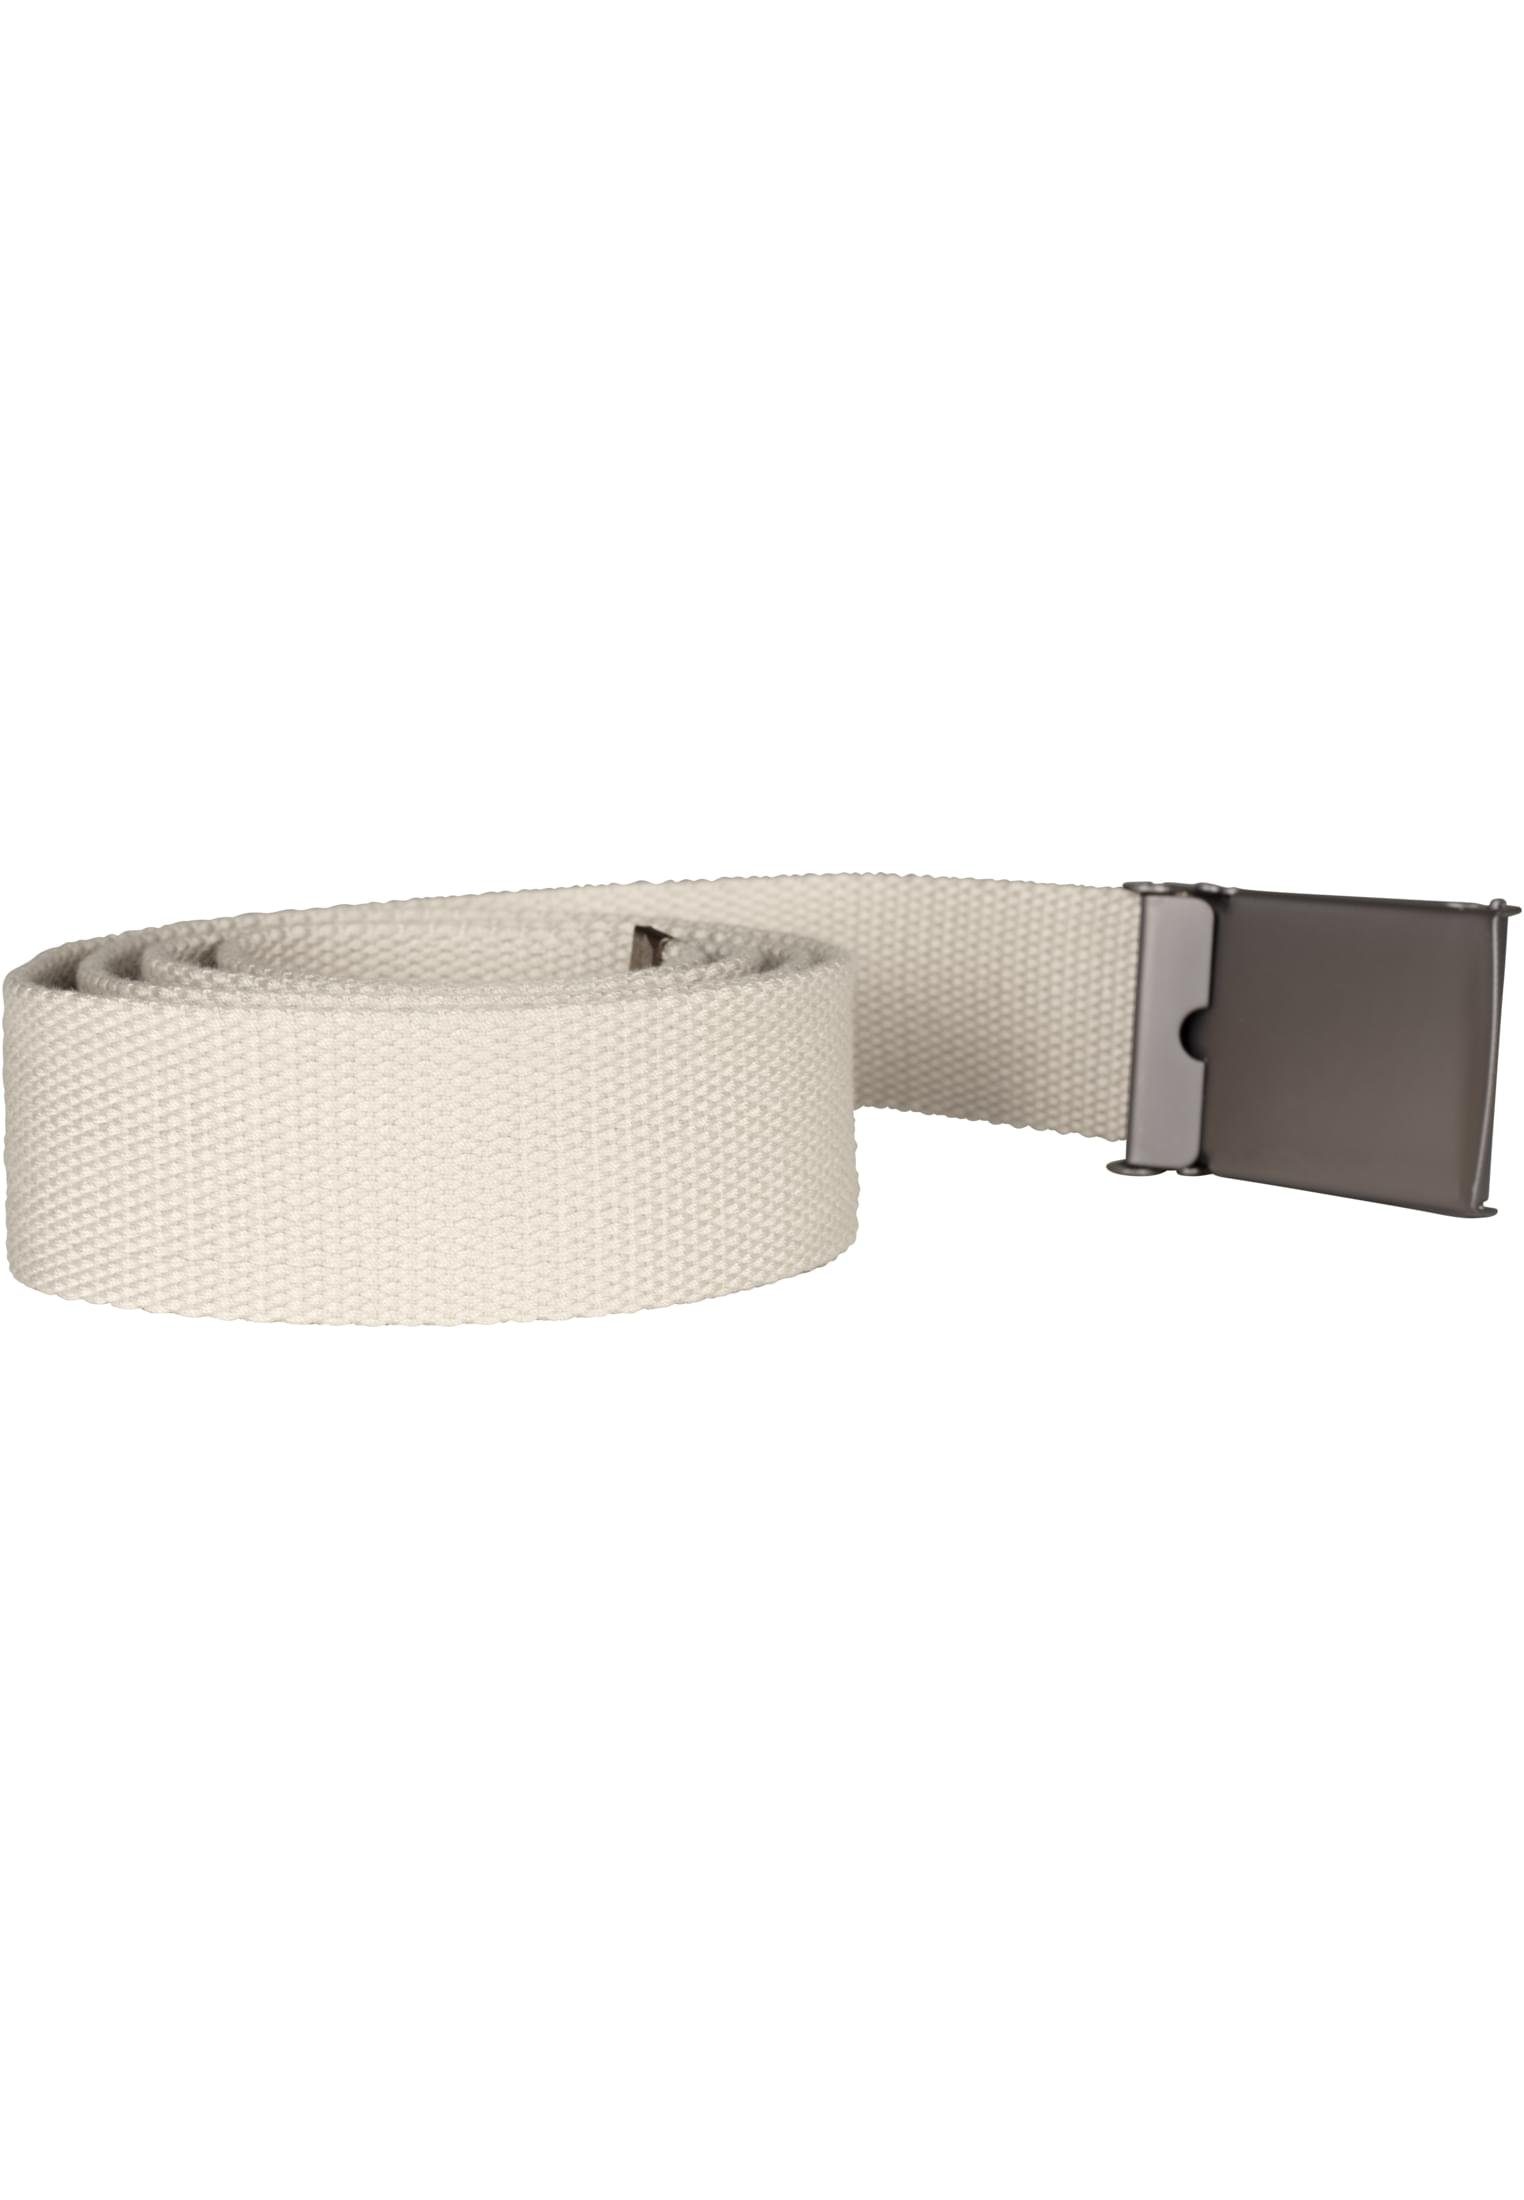 Hüftgürtel CLASSICS sand Accessoires URBAN Canvas Belts